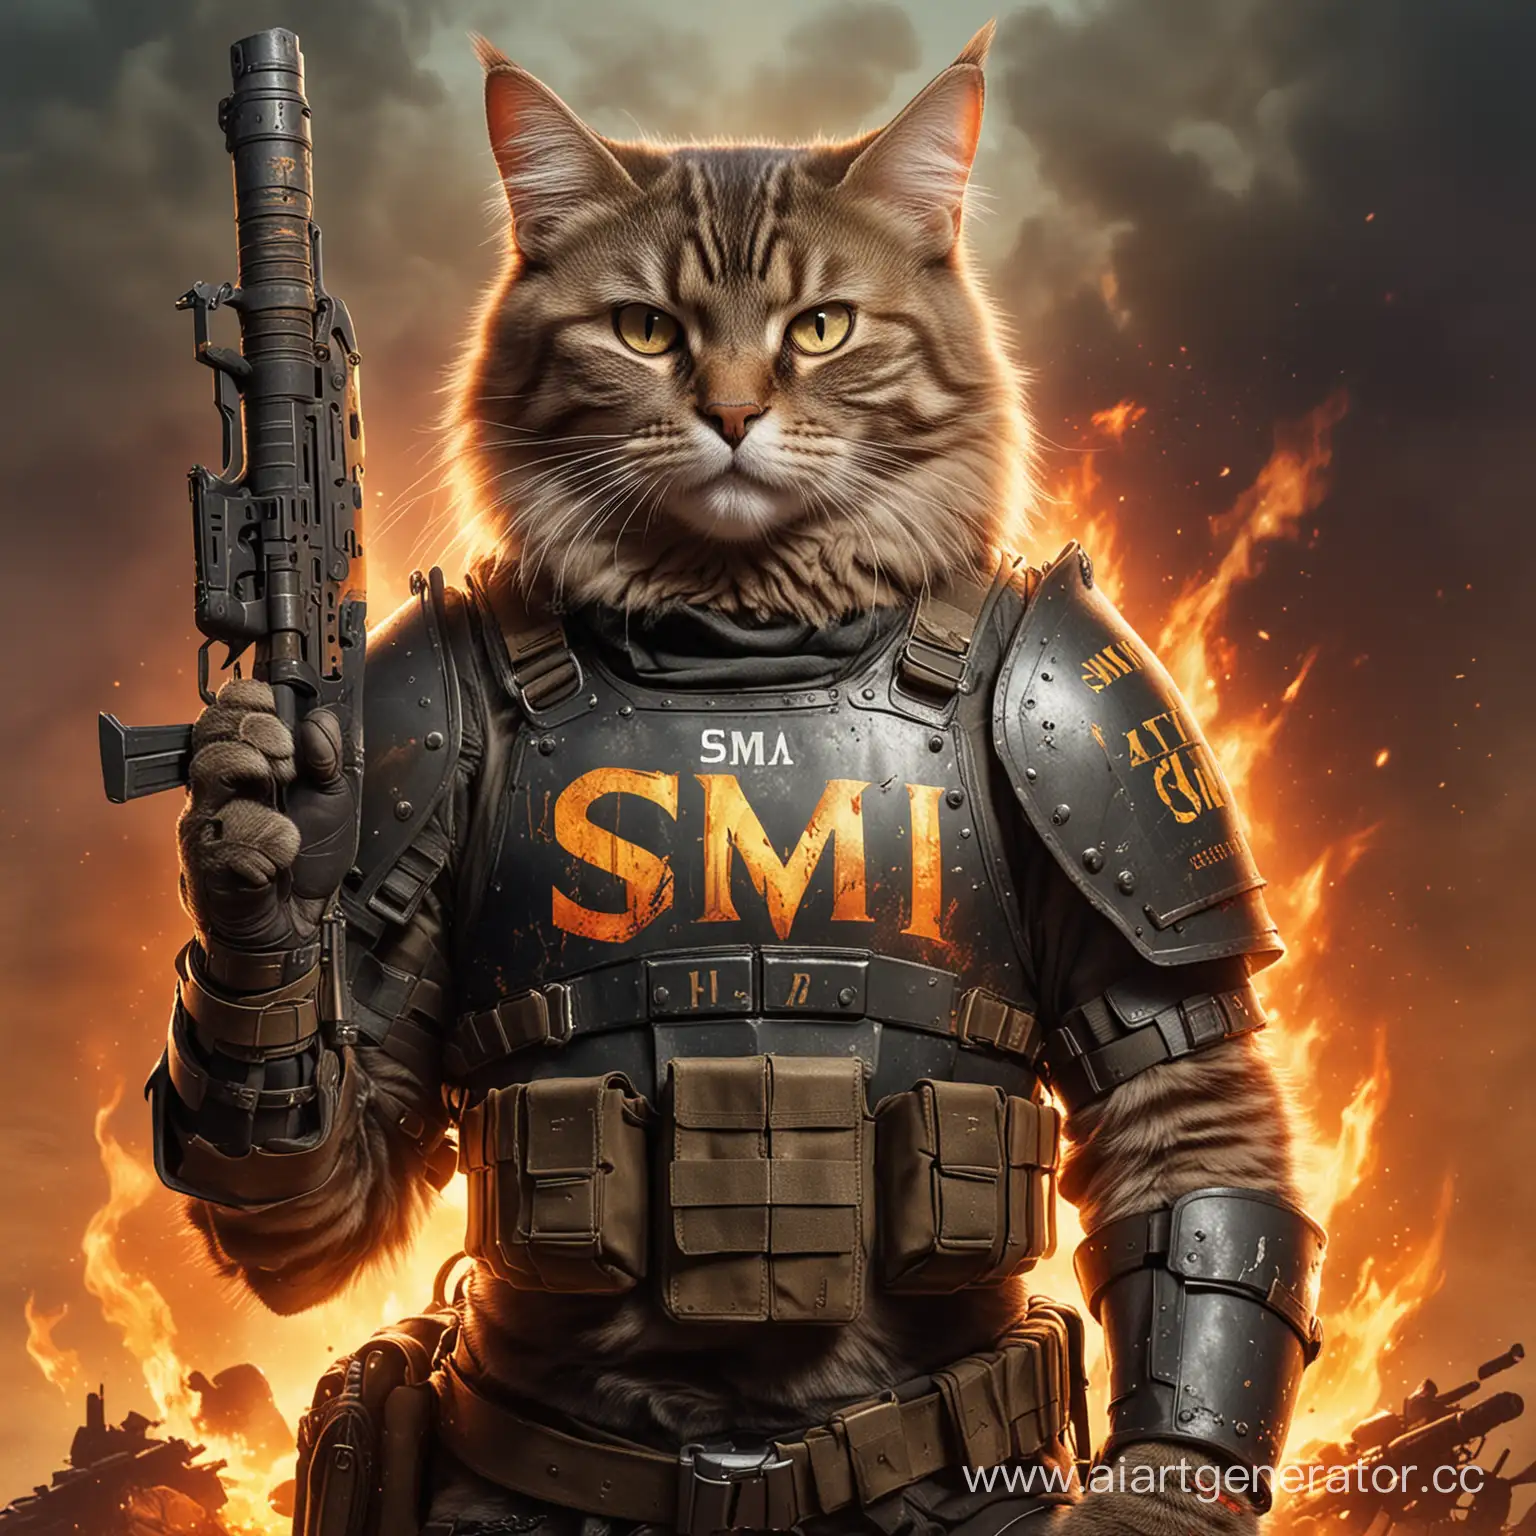 Кот с оружием в руках, одета боевая броня, на заднем фоне огонь, на груди надпись SMI